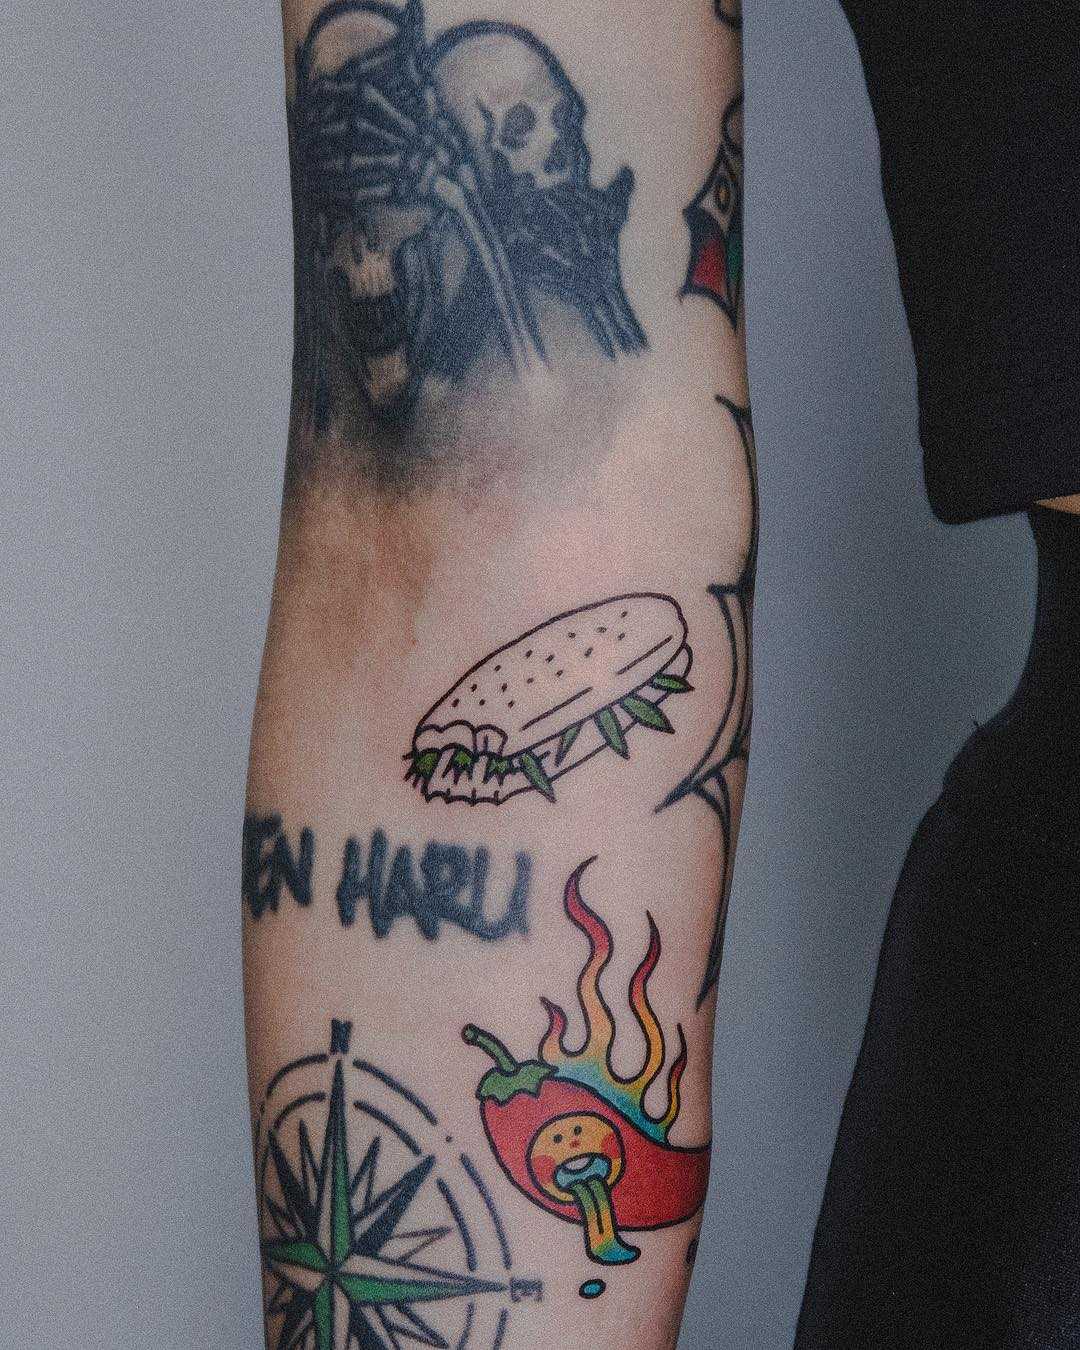 Sandwich tattoo by tattooist Bongkee